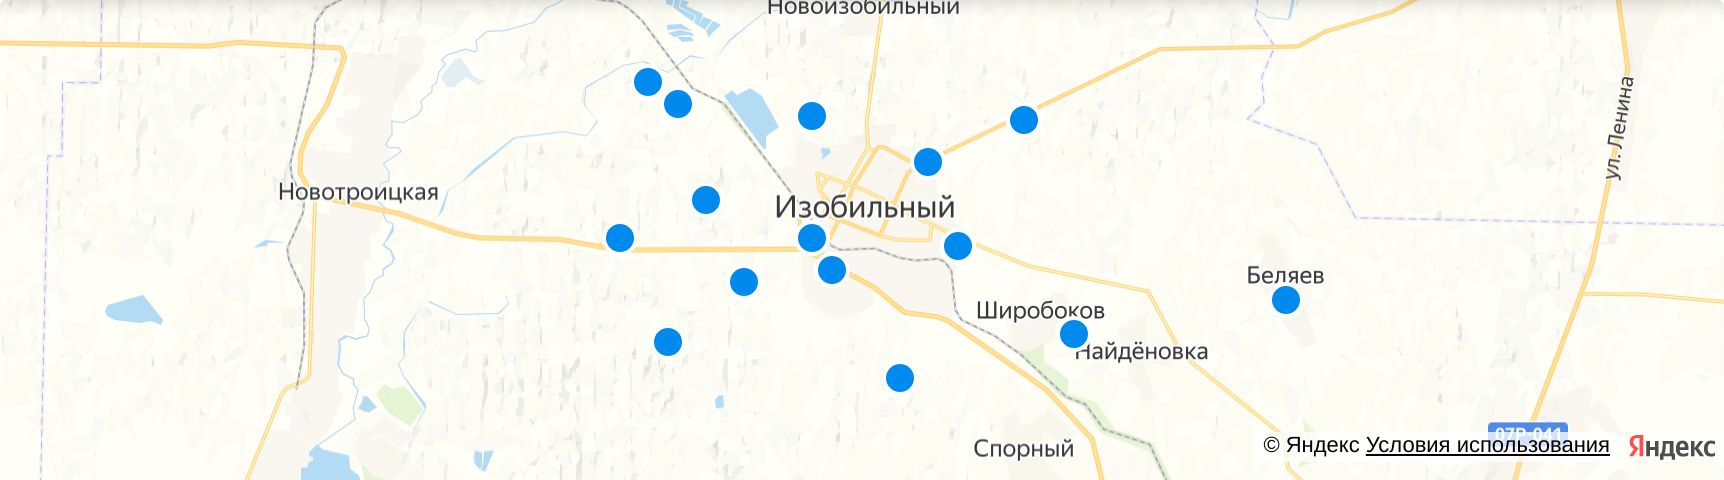 Карта изобильный ставропольский. Город Изобильный Ставропольский край на карте.